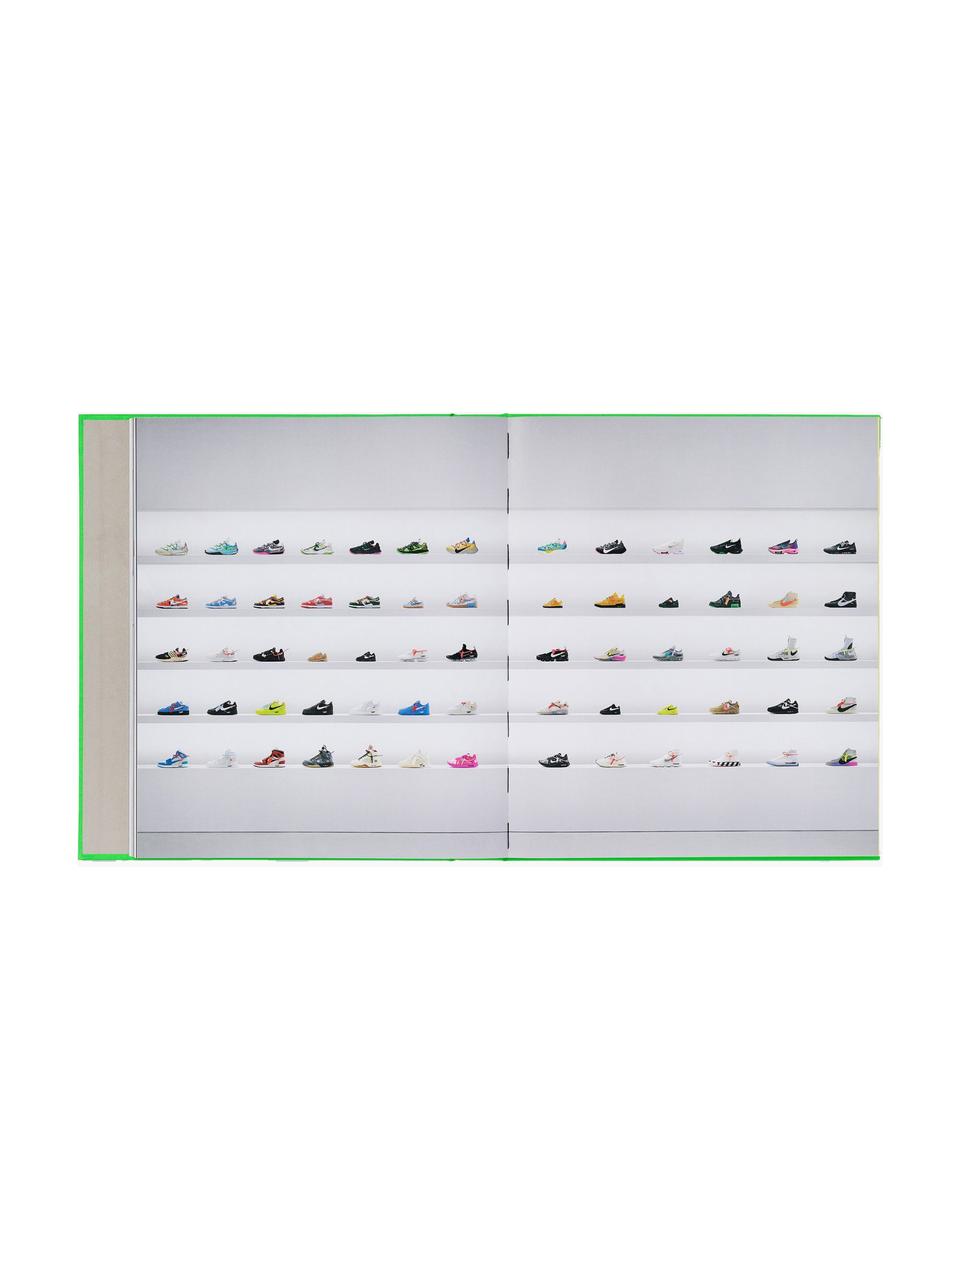 Obrázková kniha Niko - Icons, Papír, pevná vazba, Nike - Icons, Š 26 cm, V 30 cm